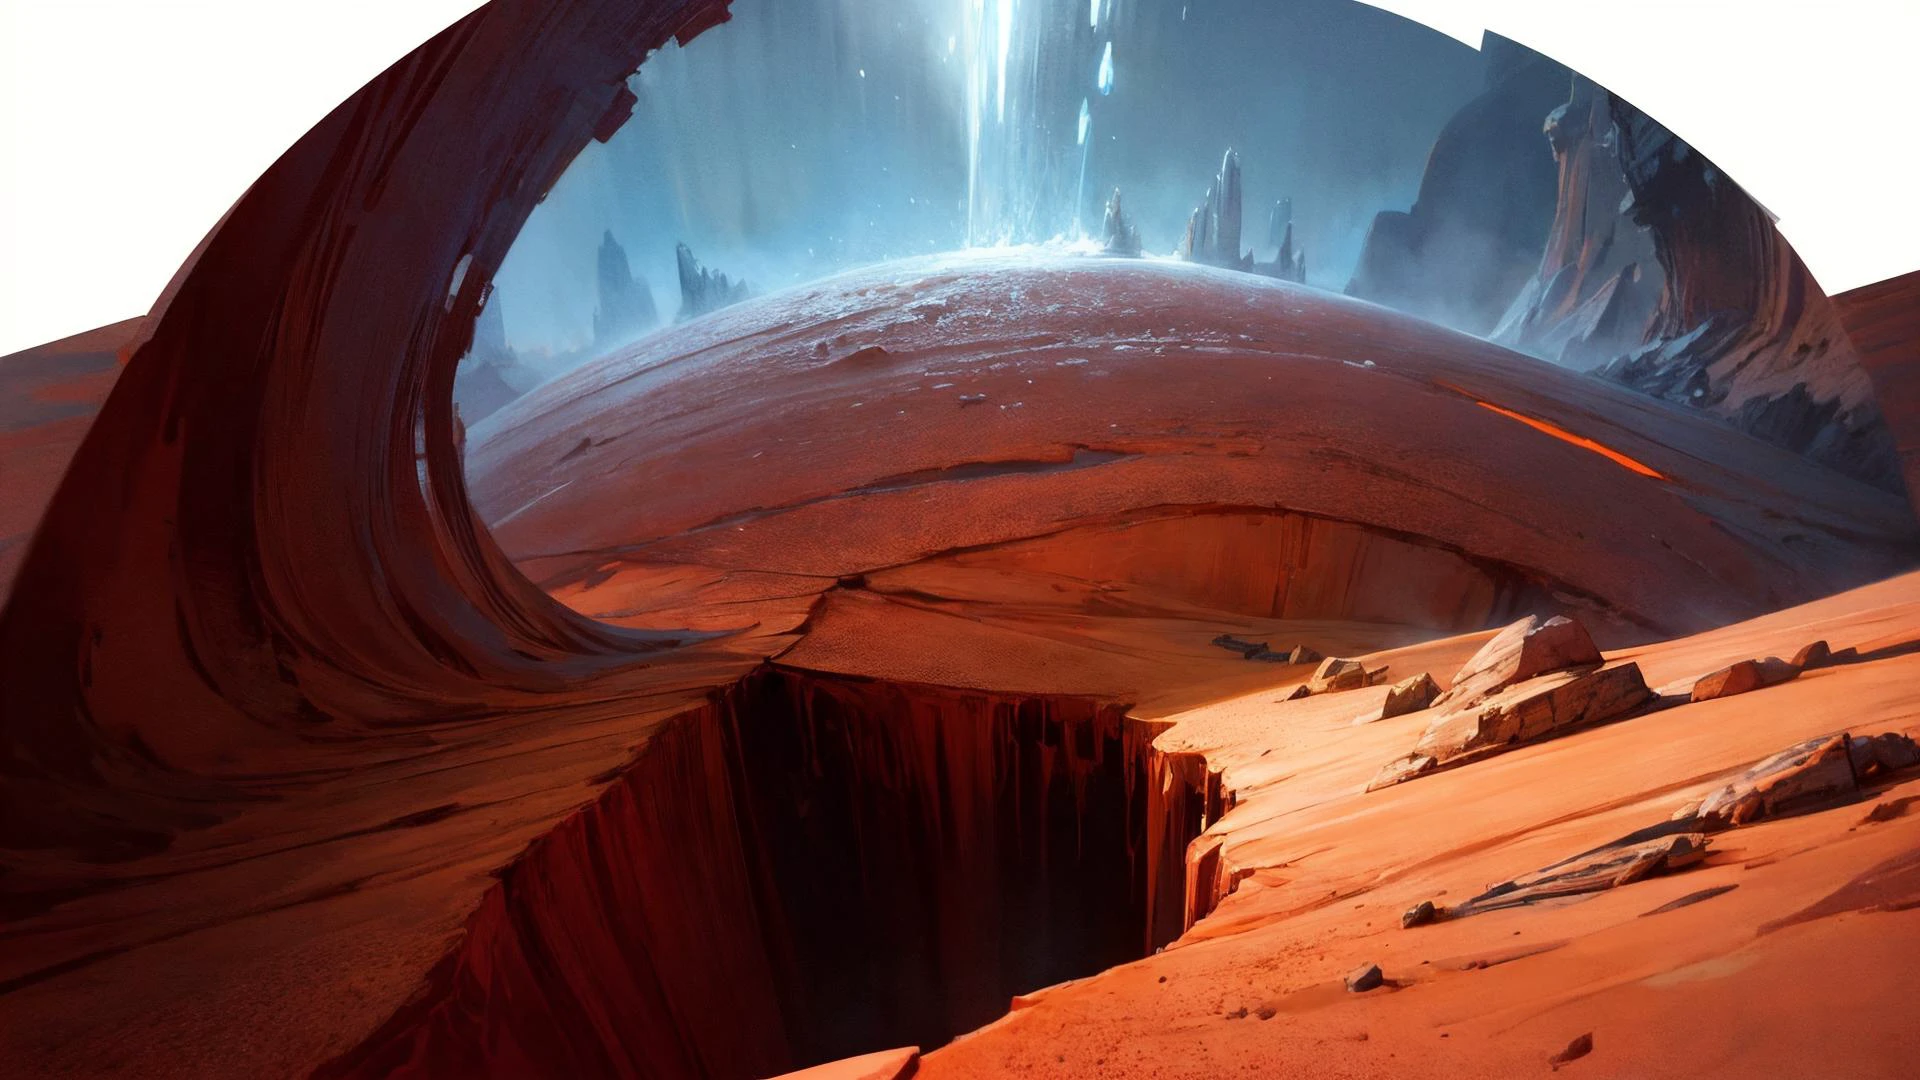 отличная картина маслом марсианских ледяных каньонов: Глубокие каньоны на Марсе, с ледяными образованиями и красной пылью, создающими резкий контраст., яркие цвета, мощный стиль с эпическим драматизмом, , Лучшее качество, максимальное качество, сложные детали, ультрасахрп, среда окклюзии, реалистичные тени, художник Бастьен Лекуфф Дехарм, 8К, масло искусство, 8К perfect quality, книга, глубокая резкость